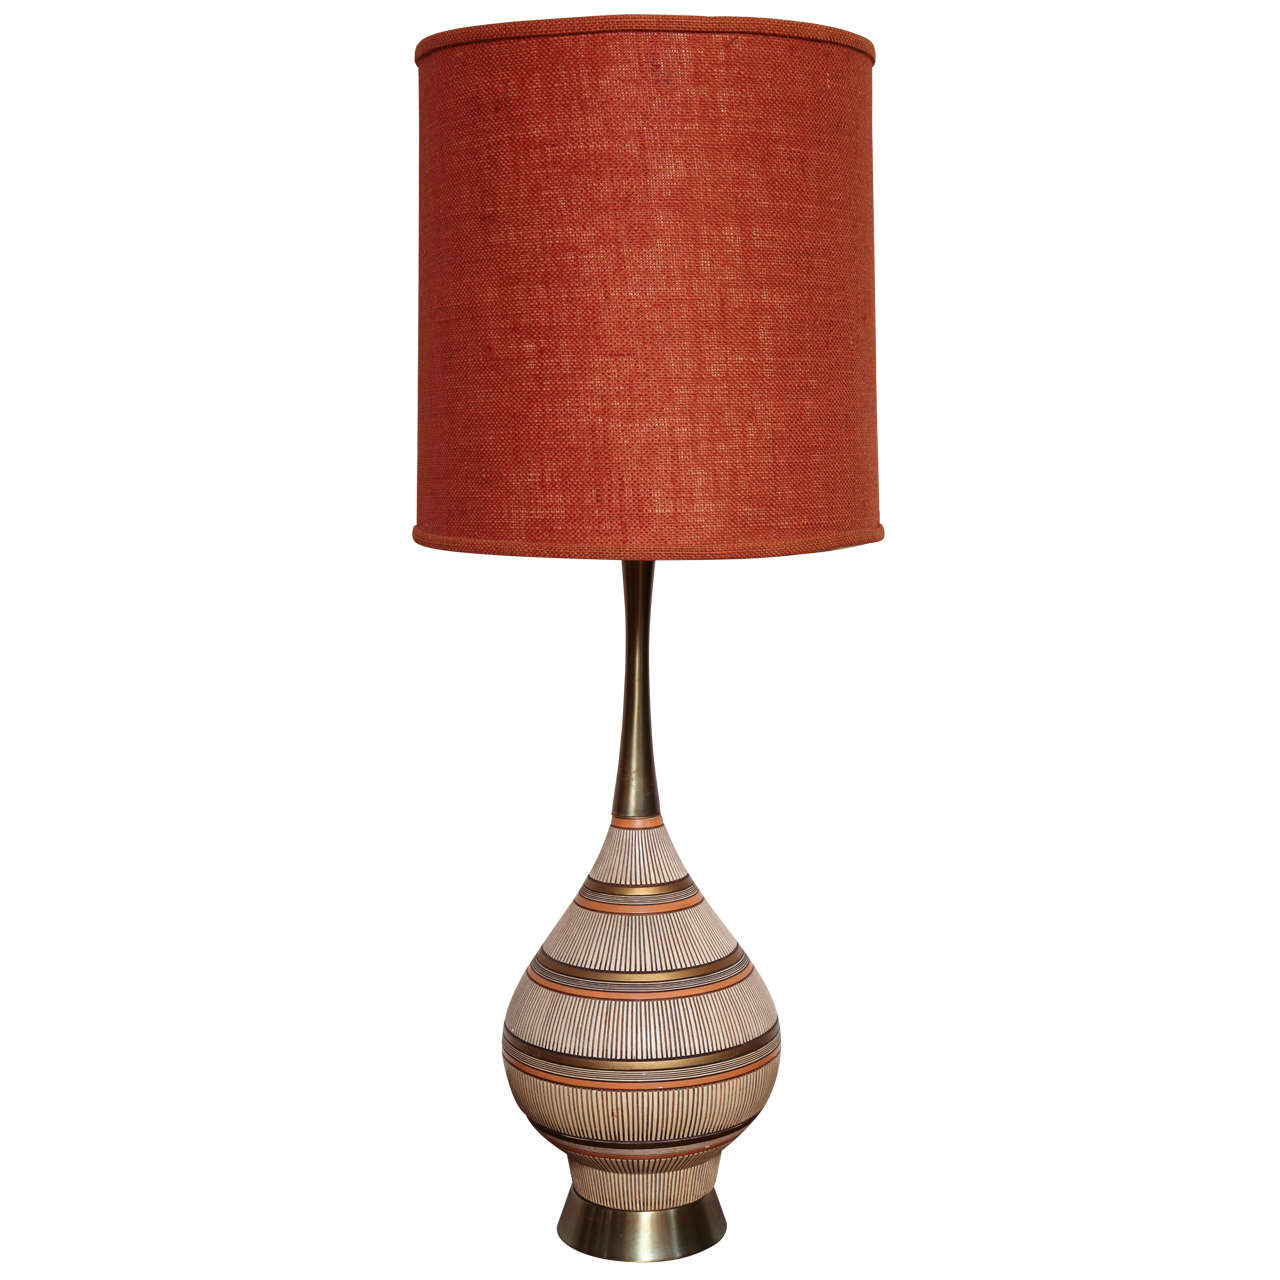 Midcentury Ceramic Lamp by Quartite Creative Corp